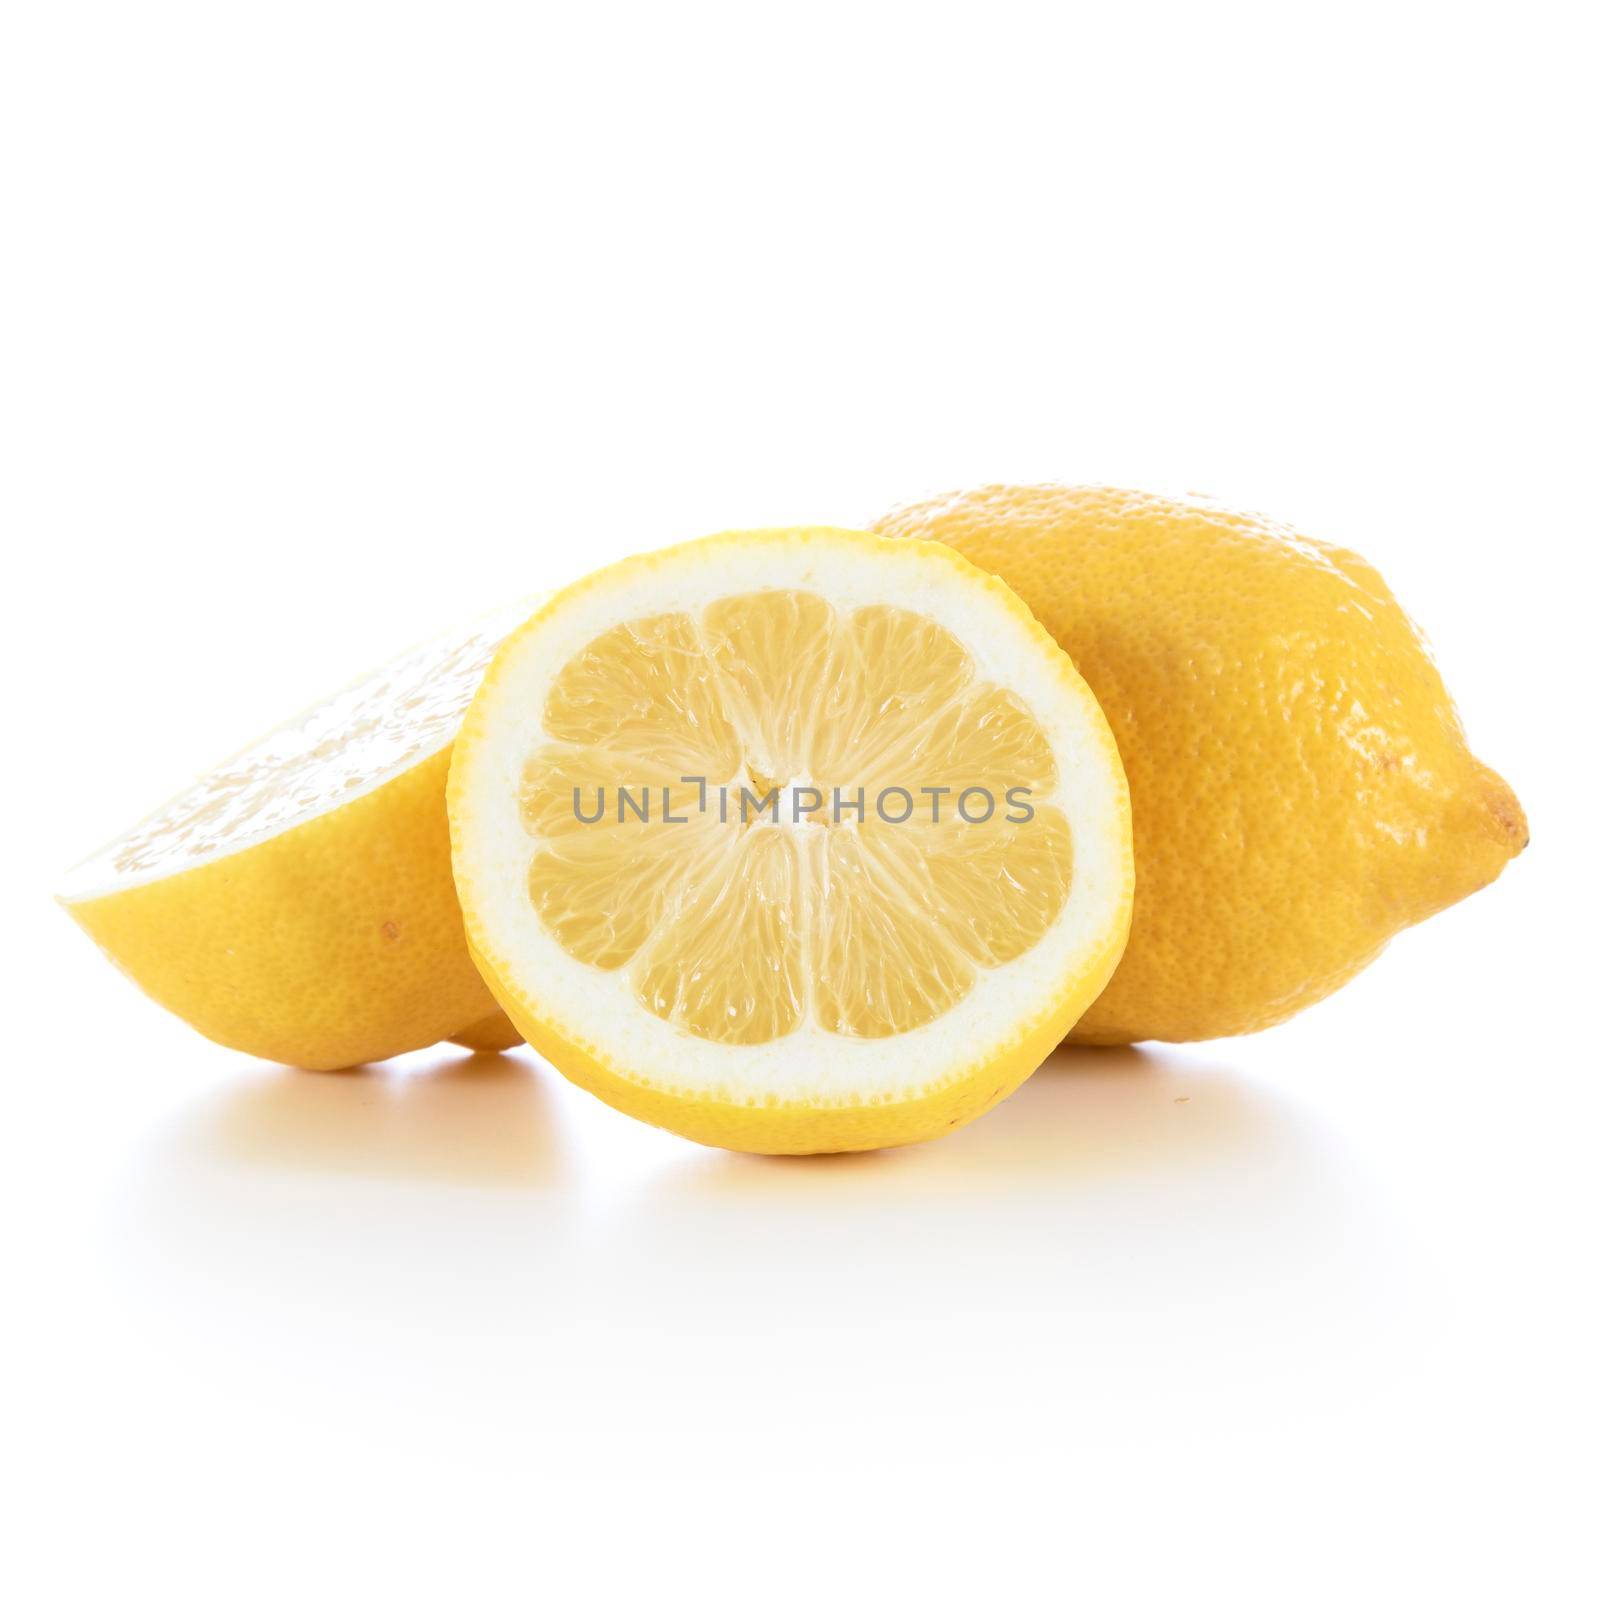 Lovely fresh Lemons by charlotteLake